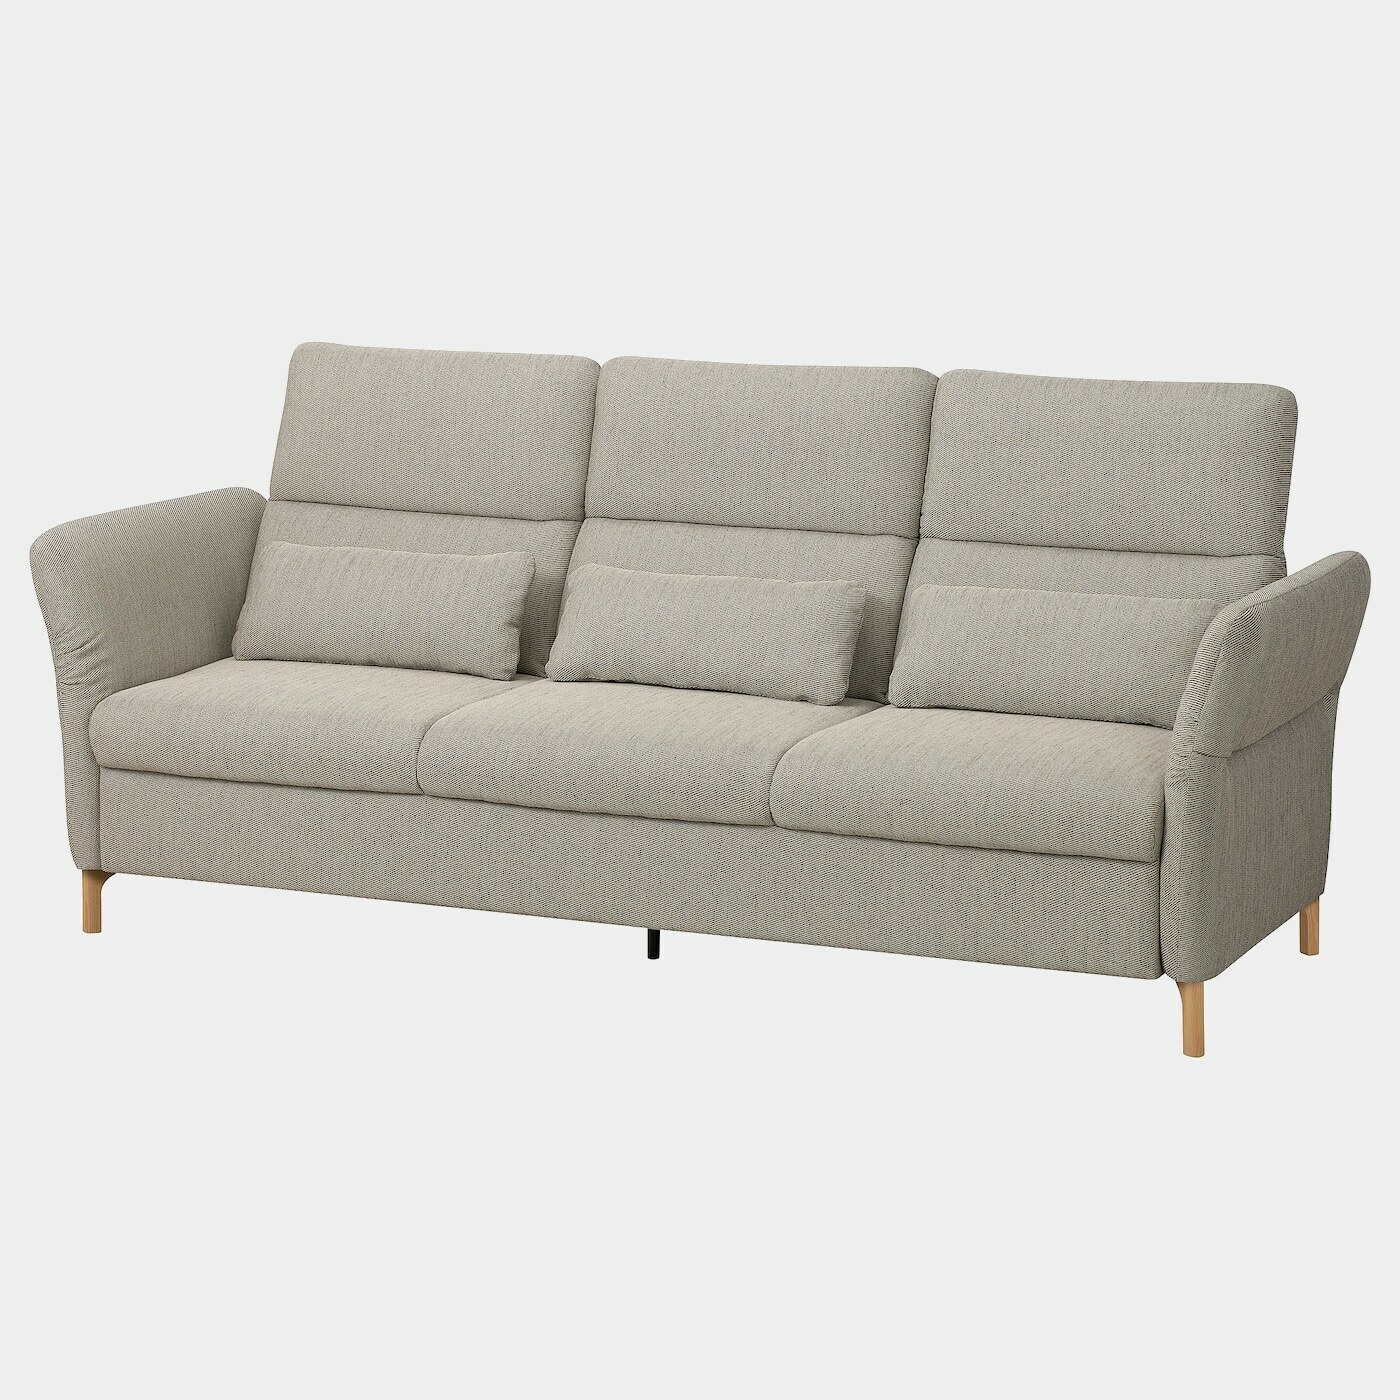 FAMMARP 3er-Sofa  -  - Möbel Ideen für dein Zuhause von Home Trends. Möbel Trends von Social Media Influencer für dein Skandi Zuhause.